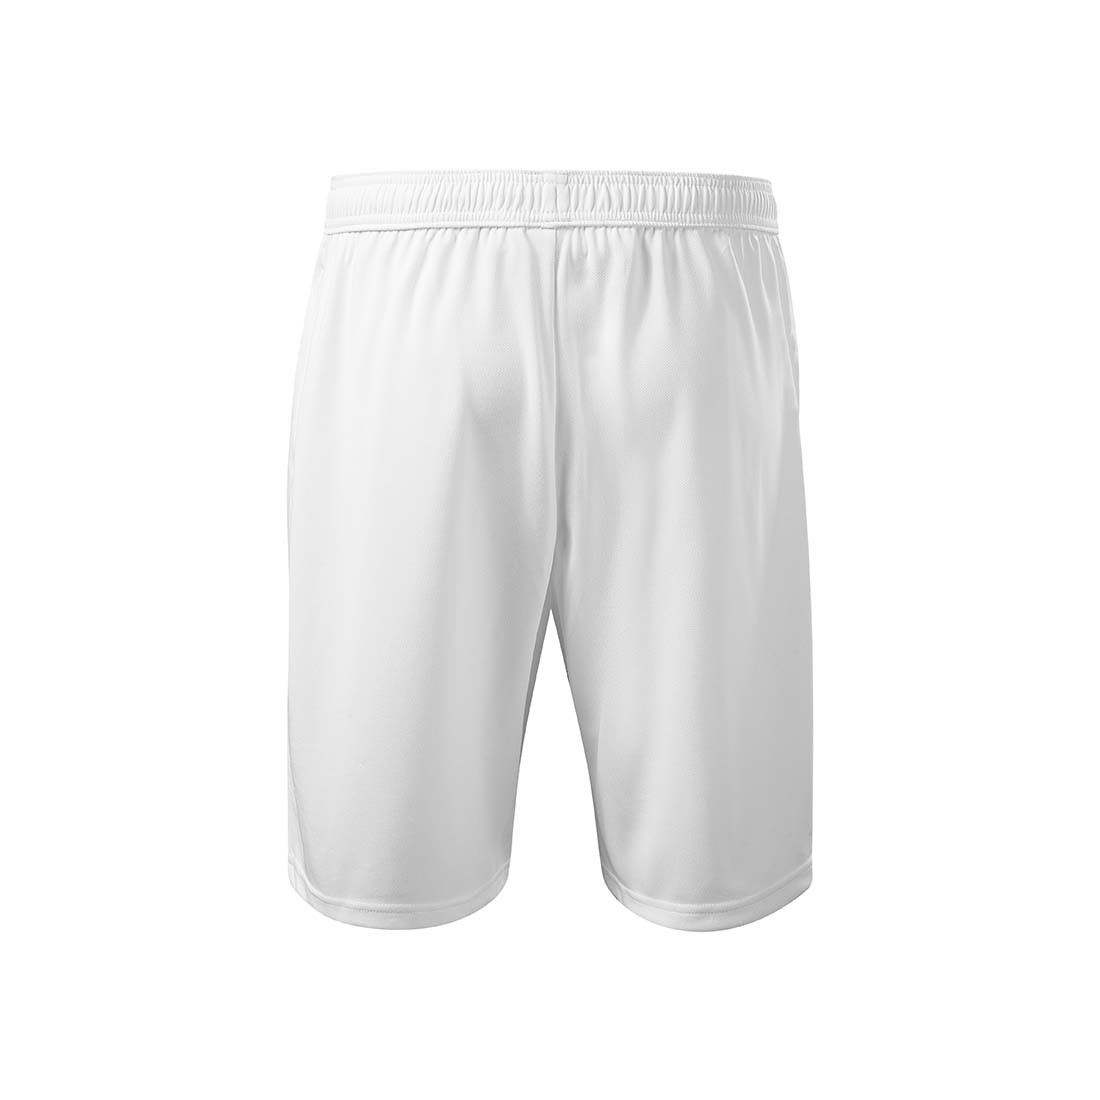 Men's Shorts - Safetywear